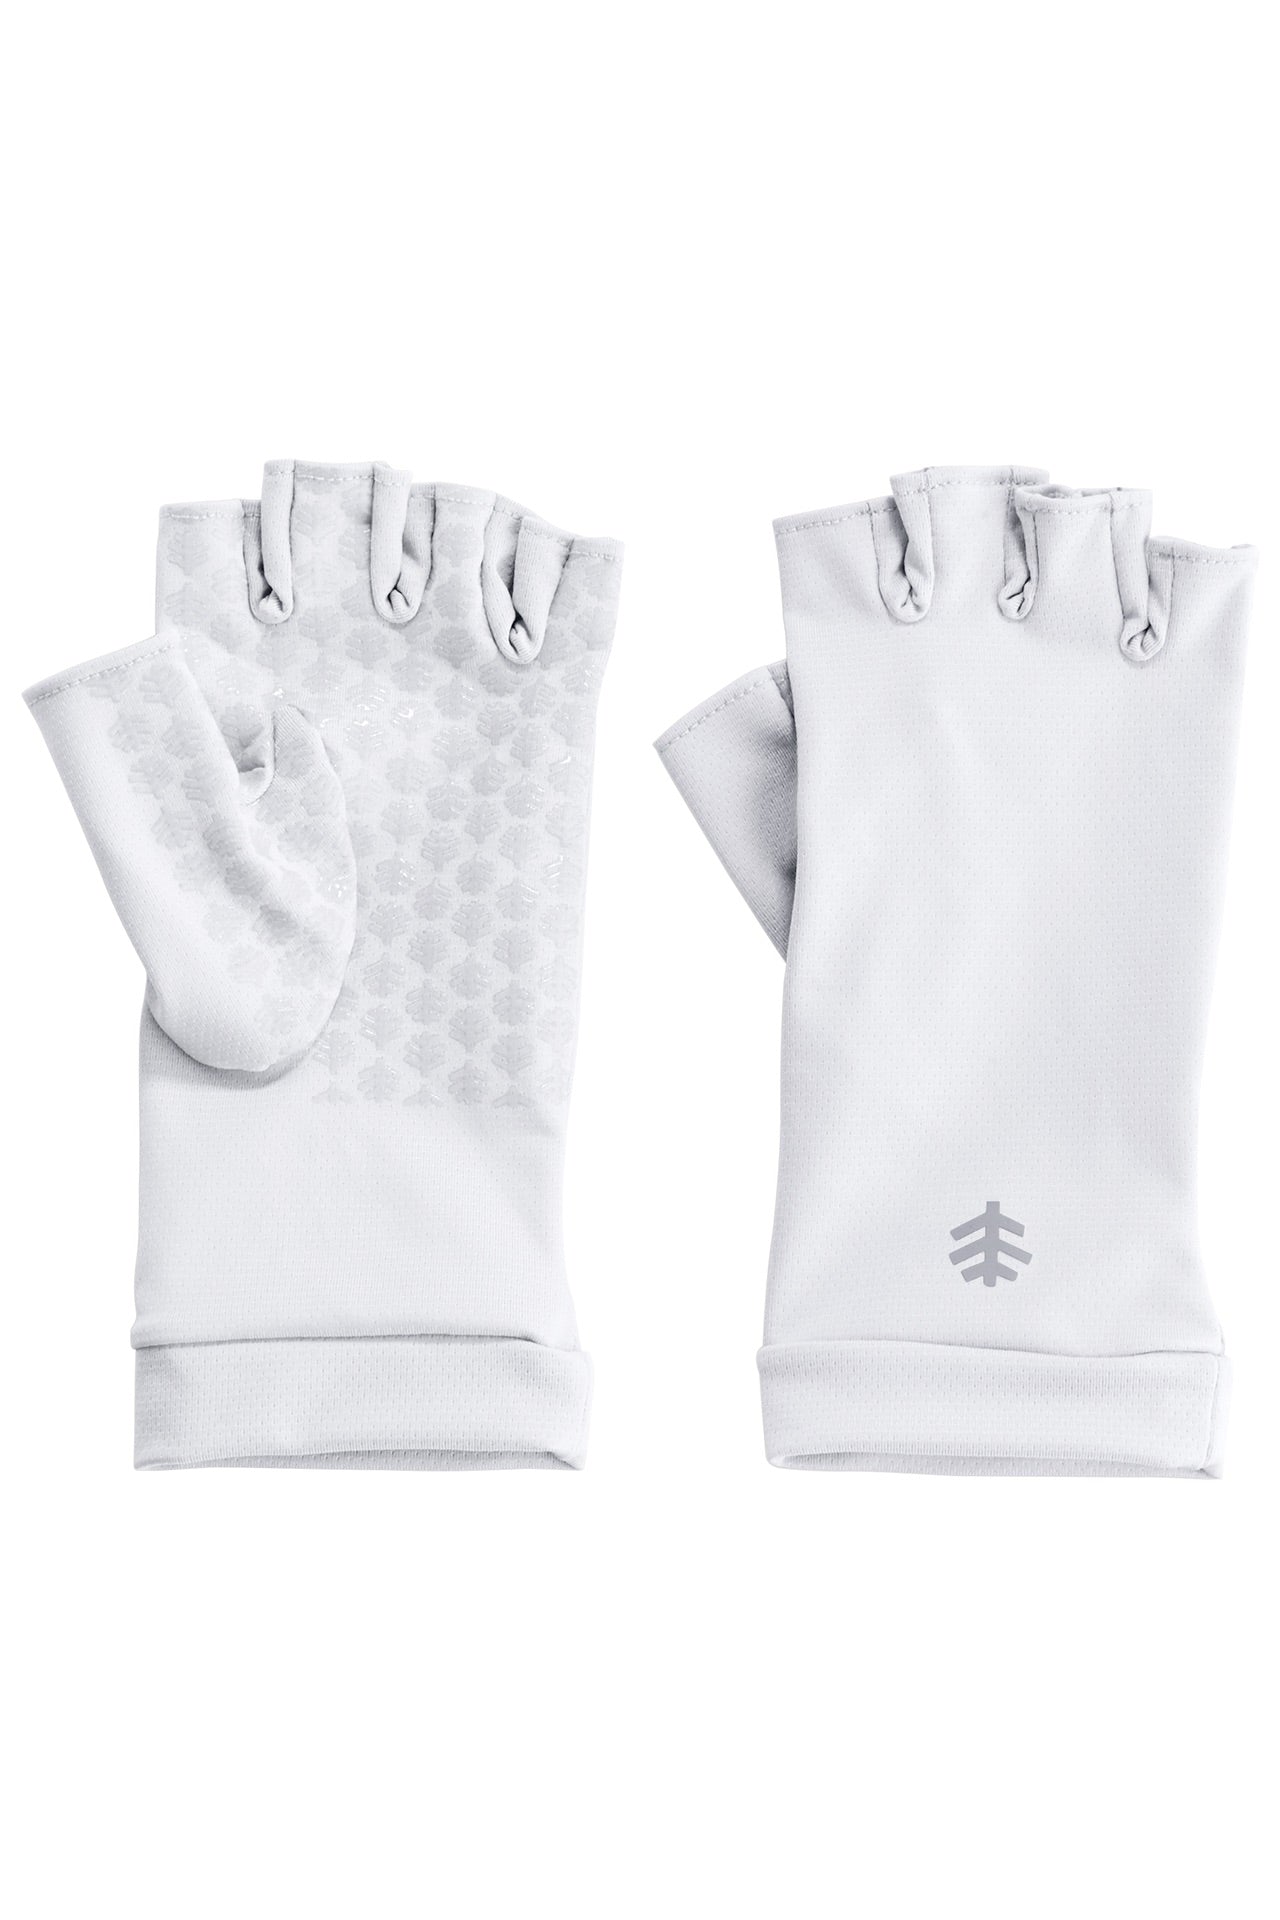 Ouray UV Fingerless Sun Gloves UPF 50+ - Coolibar White / XL